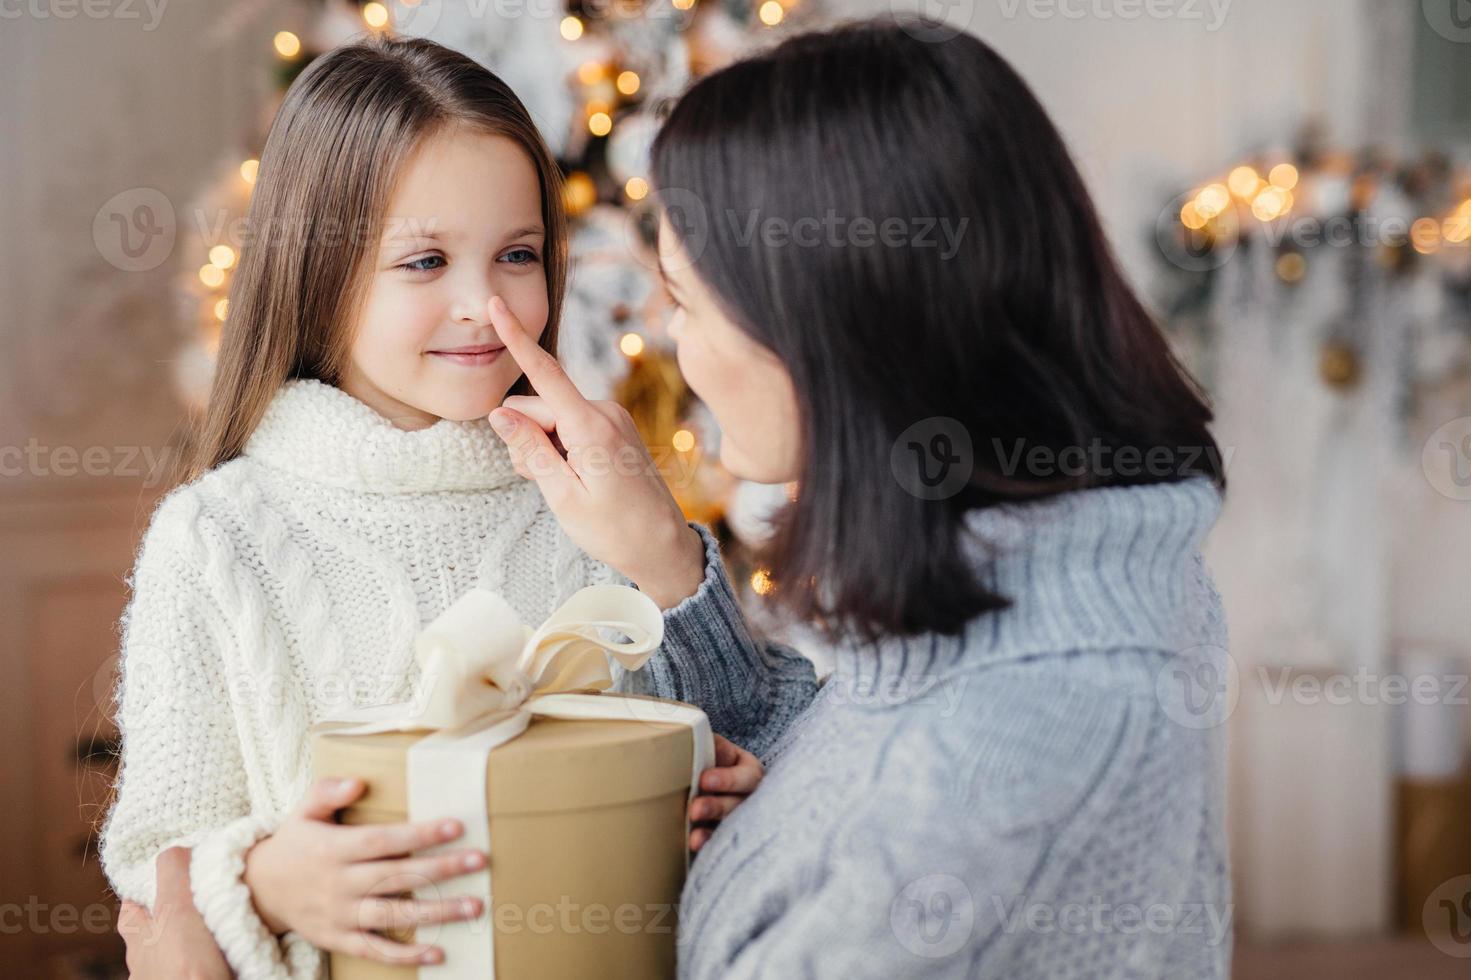 liebevolle mutter schenkt ihrer entzückenden kleinen tochter ein geschenk, bereitet zu weihnachten eine überraschung vor, berührt ihre nase, drückt große liebe aus. familie, feier, geschenke, wunder, winterferienkonzept foto